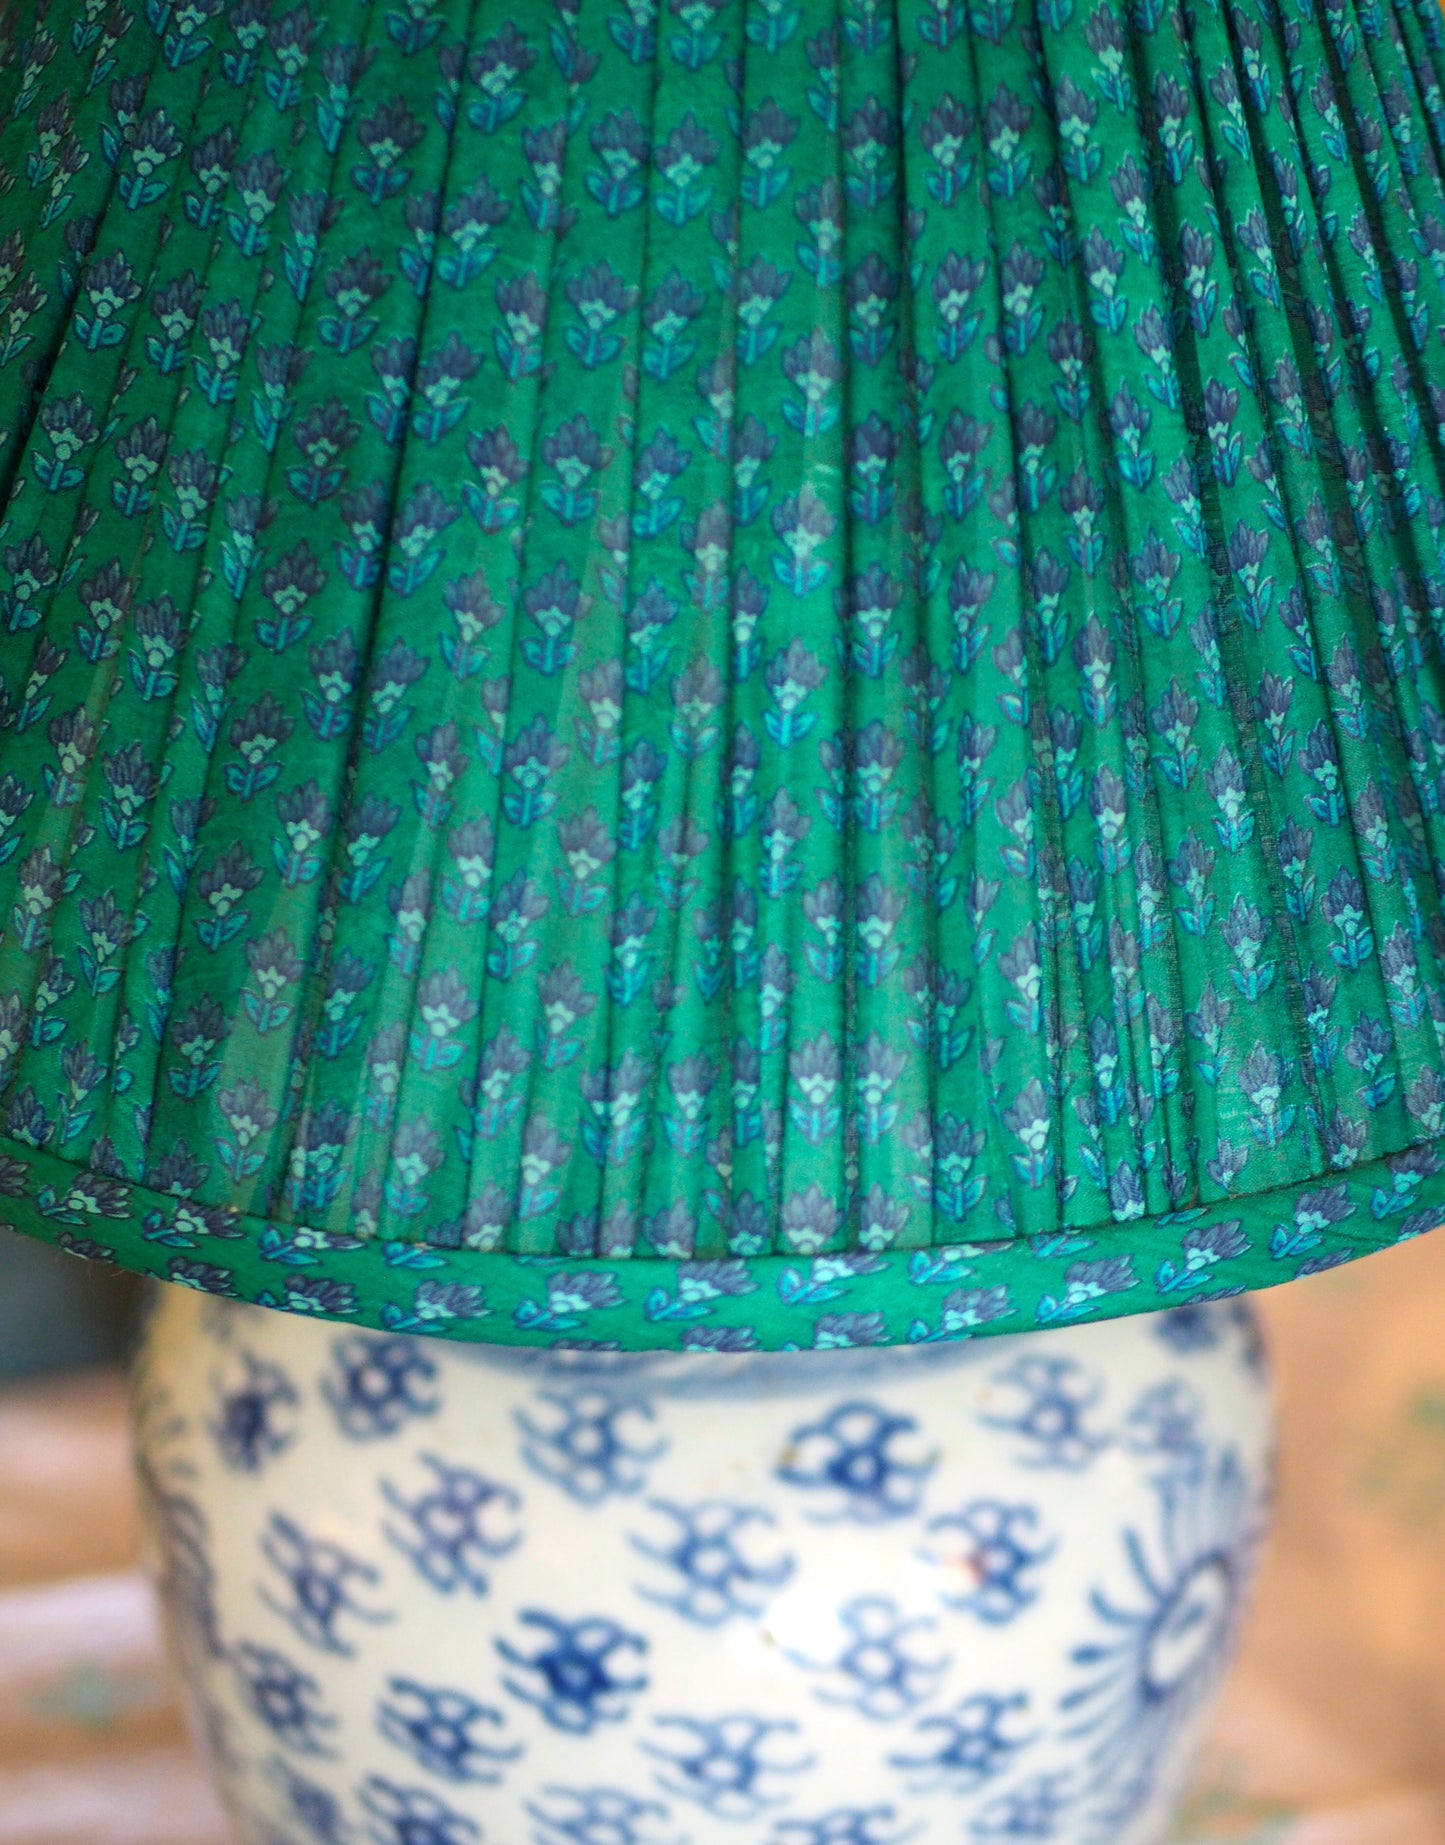 Sun ginger jar lamp base with green silk sari shade